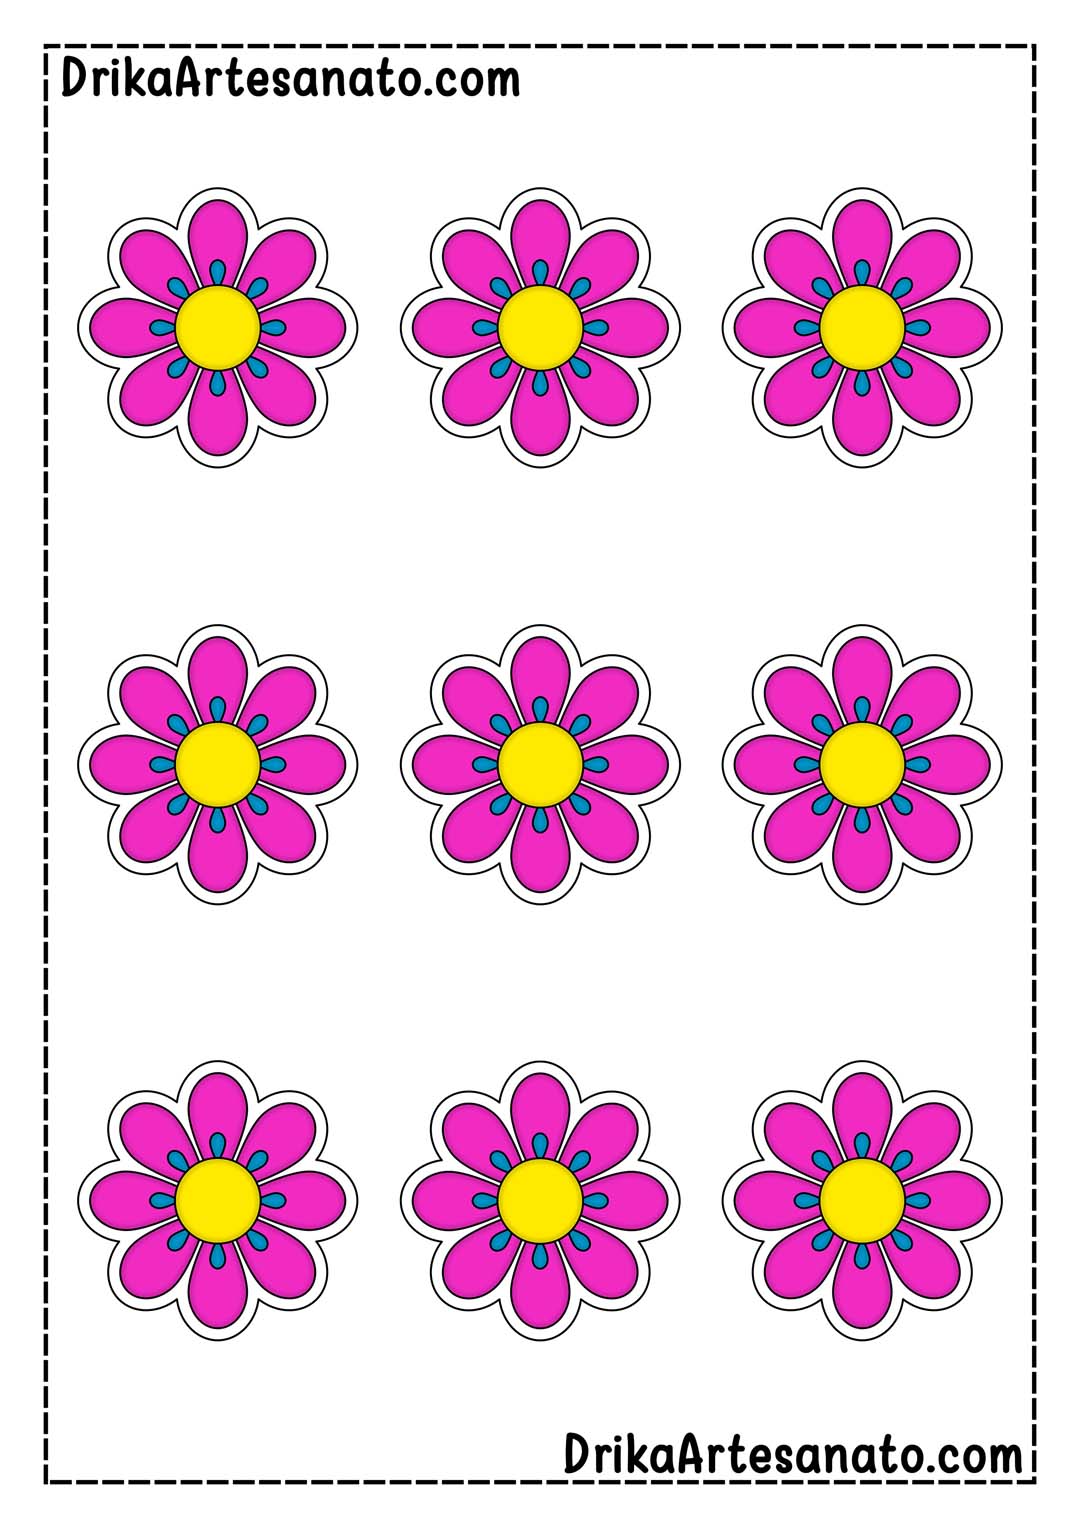 Desenho de Flor com 8 Pétalas Colorida em Tamanho Pequeno